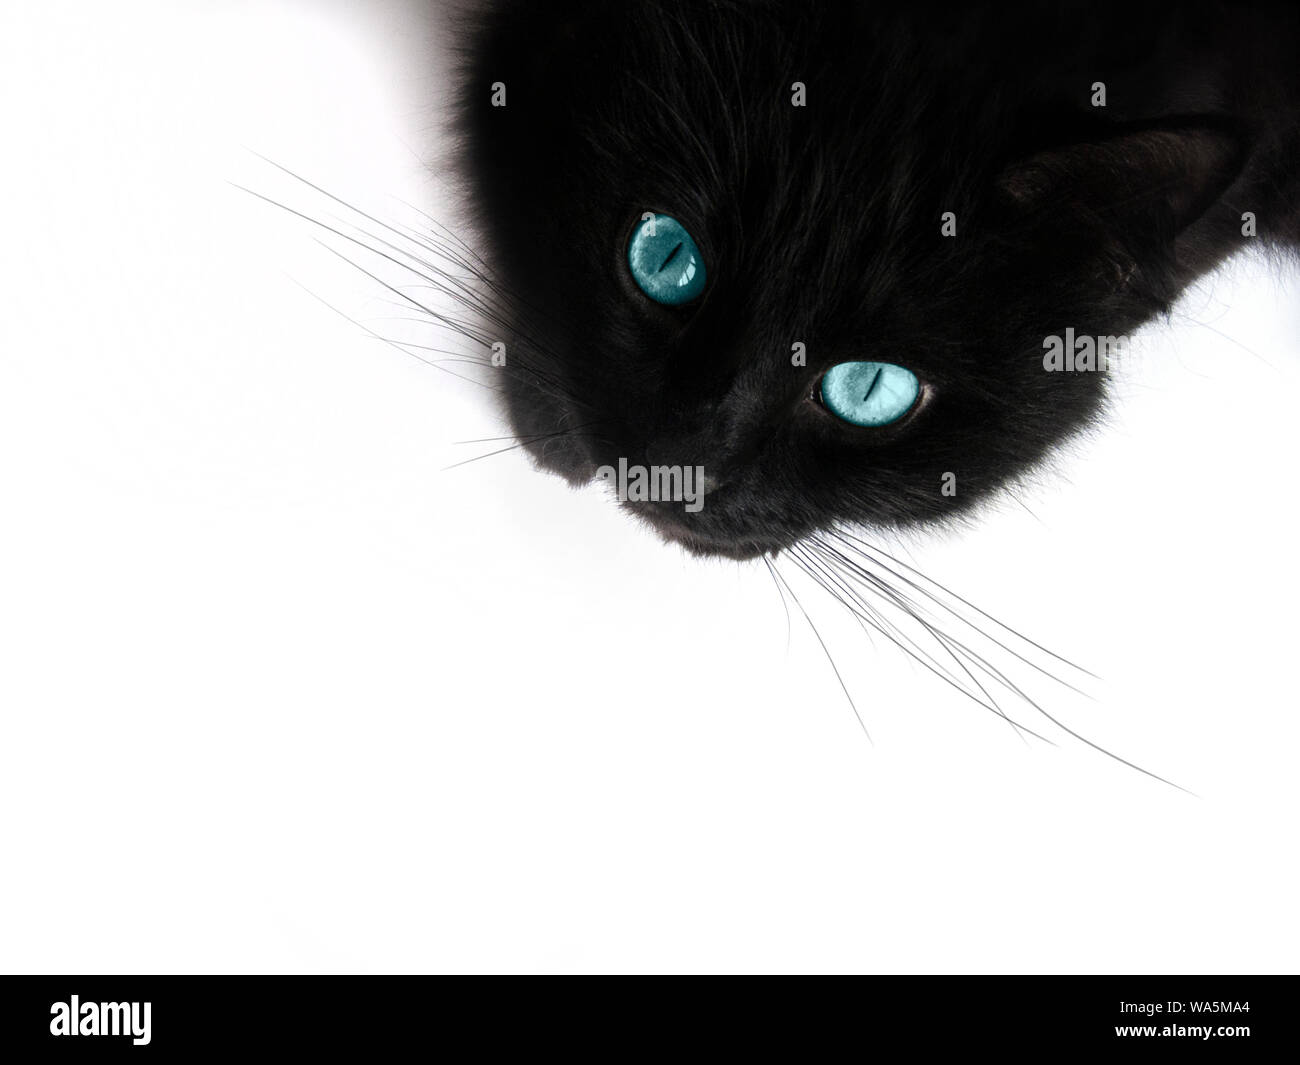 Schwarze Katze mit blauen Augen auf einem weißen Hintergrund  Stockfotografie - Alamy